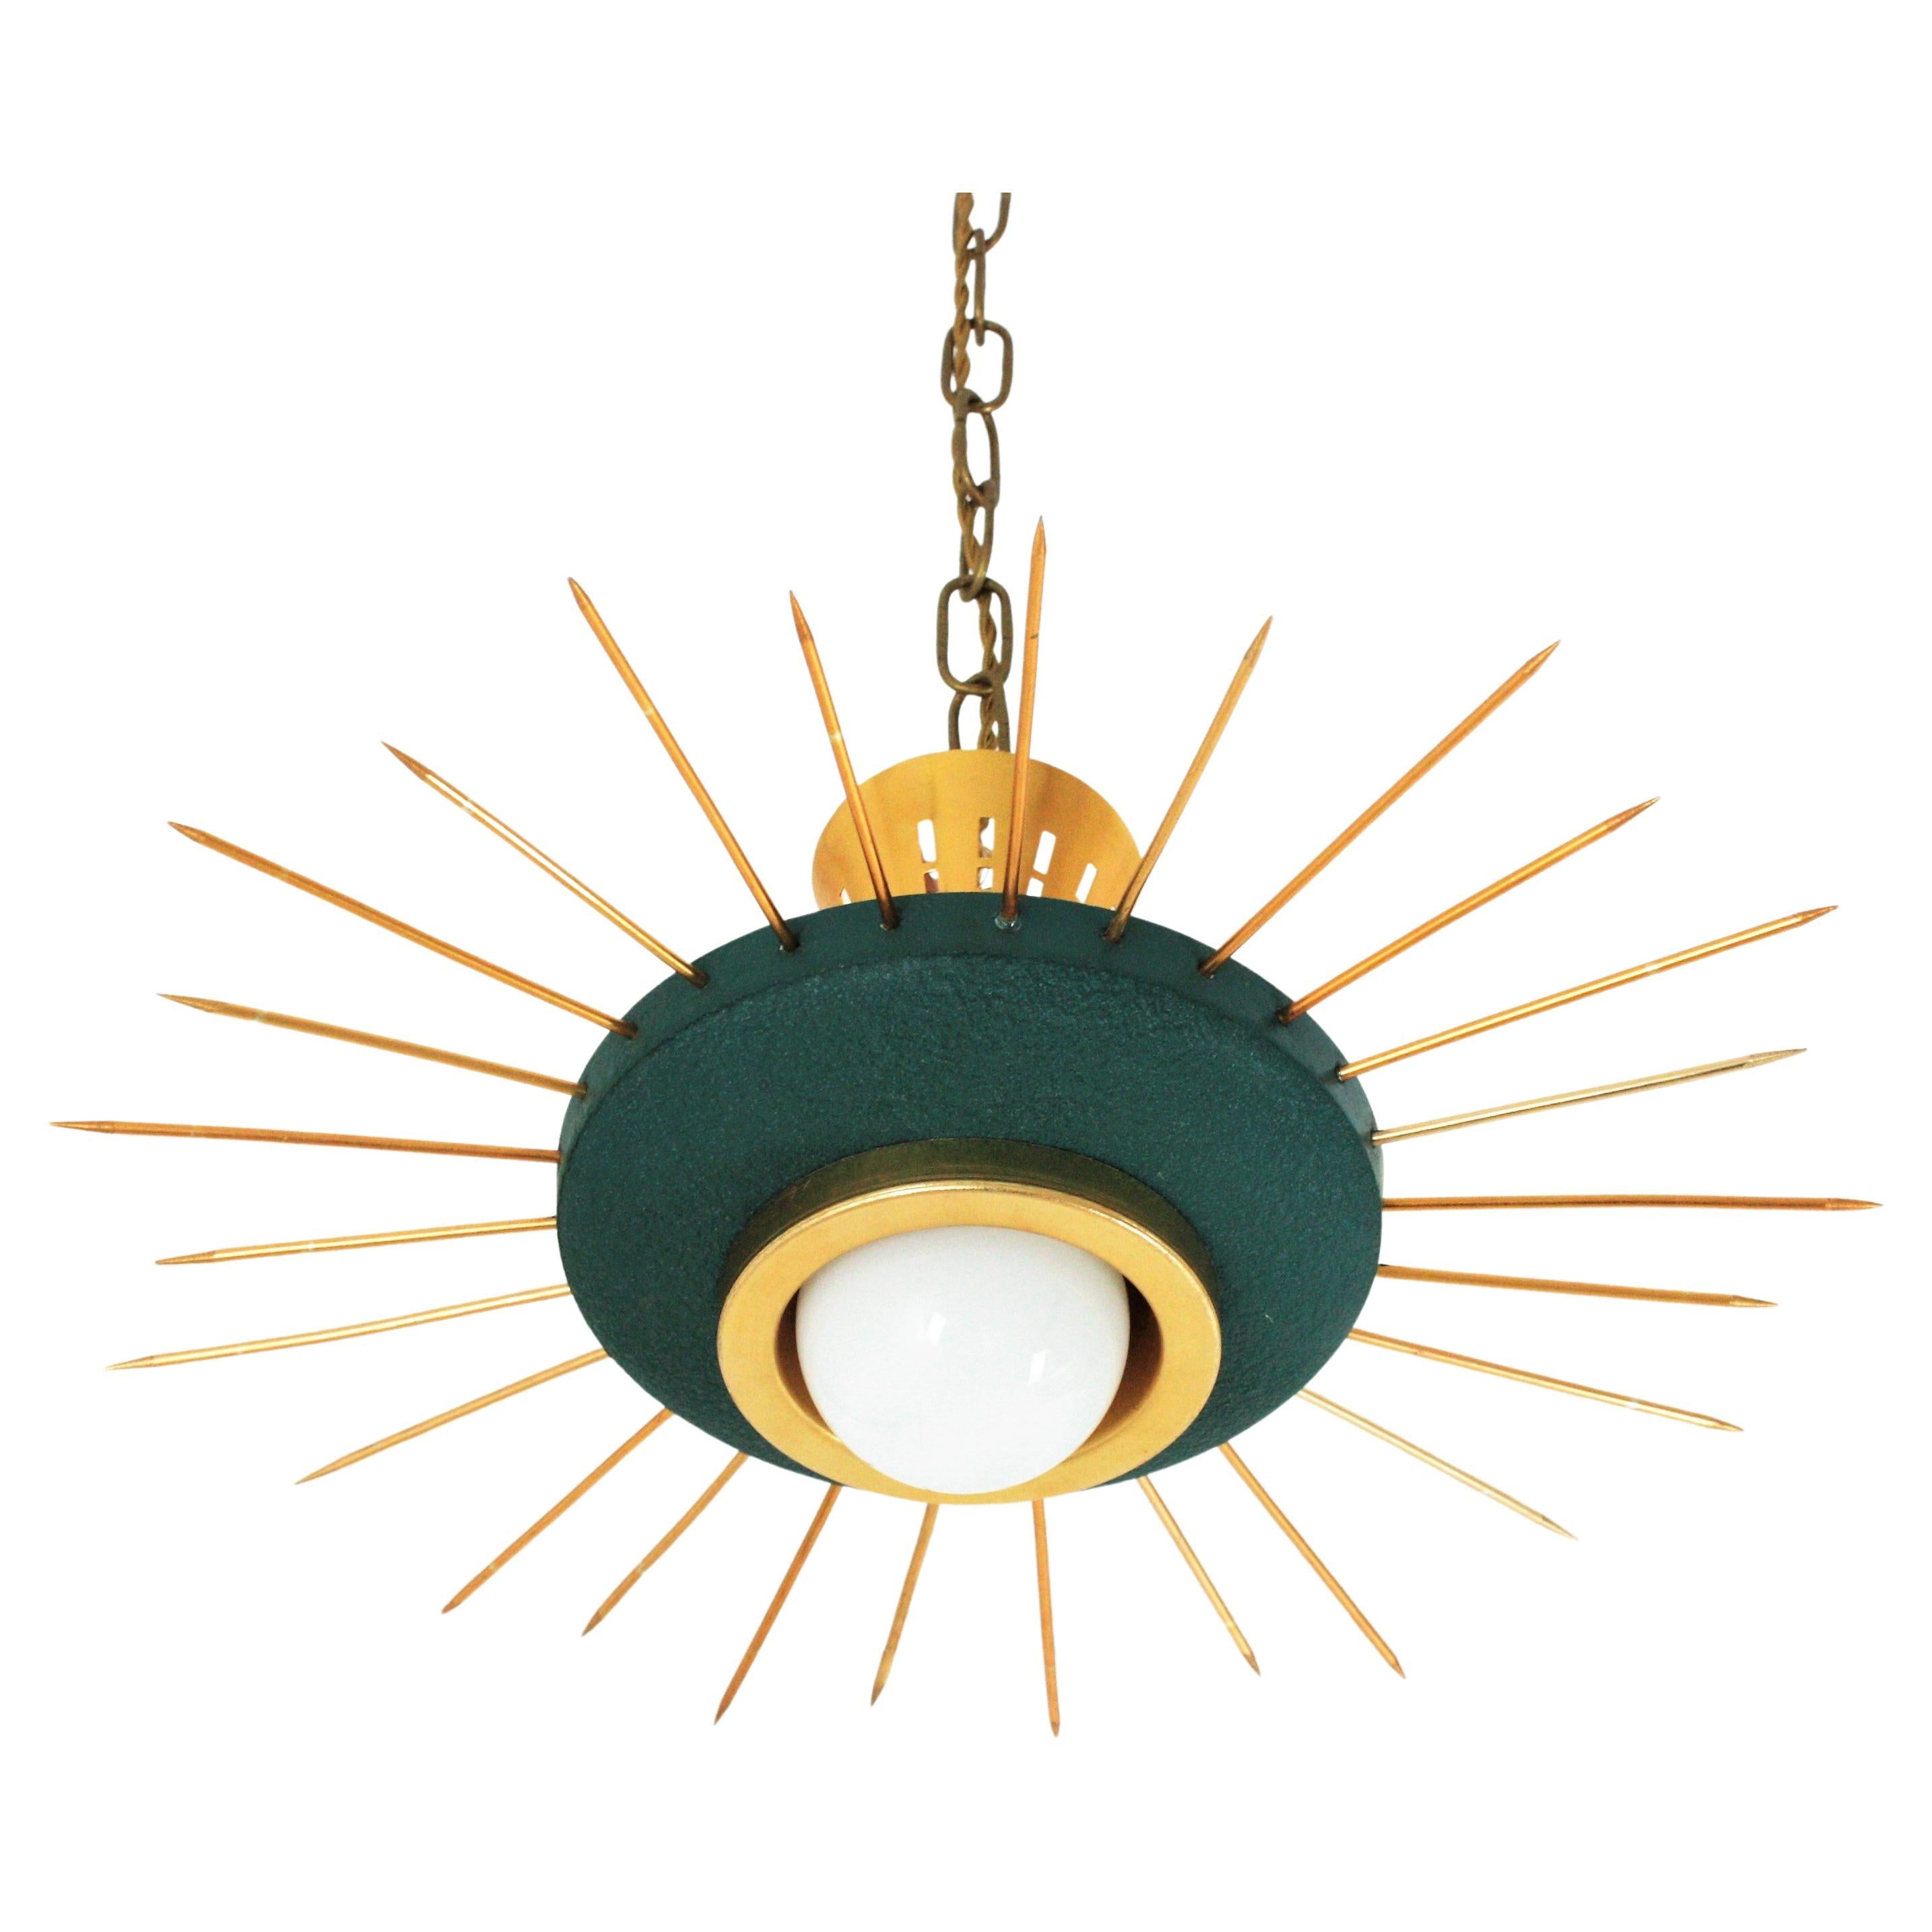 Italian 1950s Sunburst Flush Mount Pendant Light in Green Metal and Brass